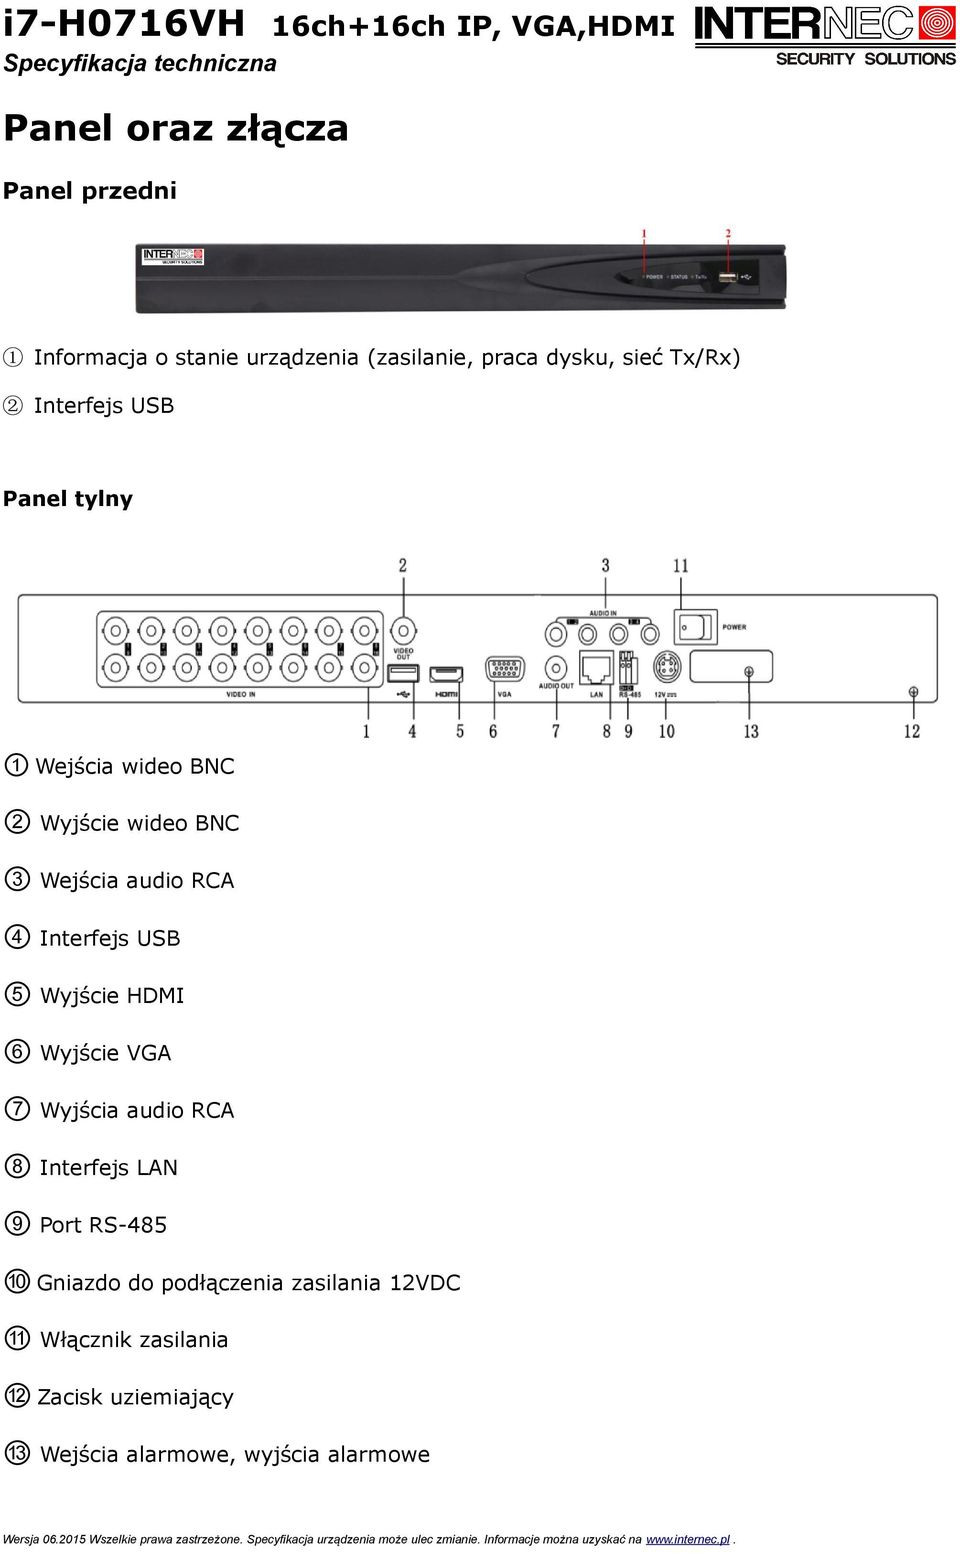 USB 5 Wyjście HDMI 6 Wyjście VGA 7 Wyjścia audio RCA 8 Interfejs LAN 9 Port RS-485 10 Gniazdo do